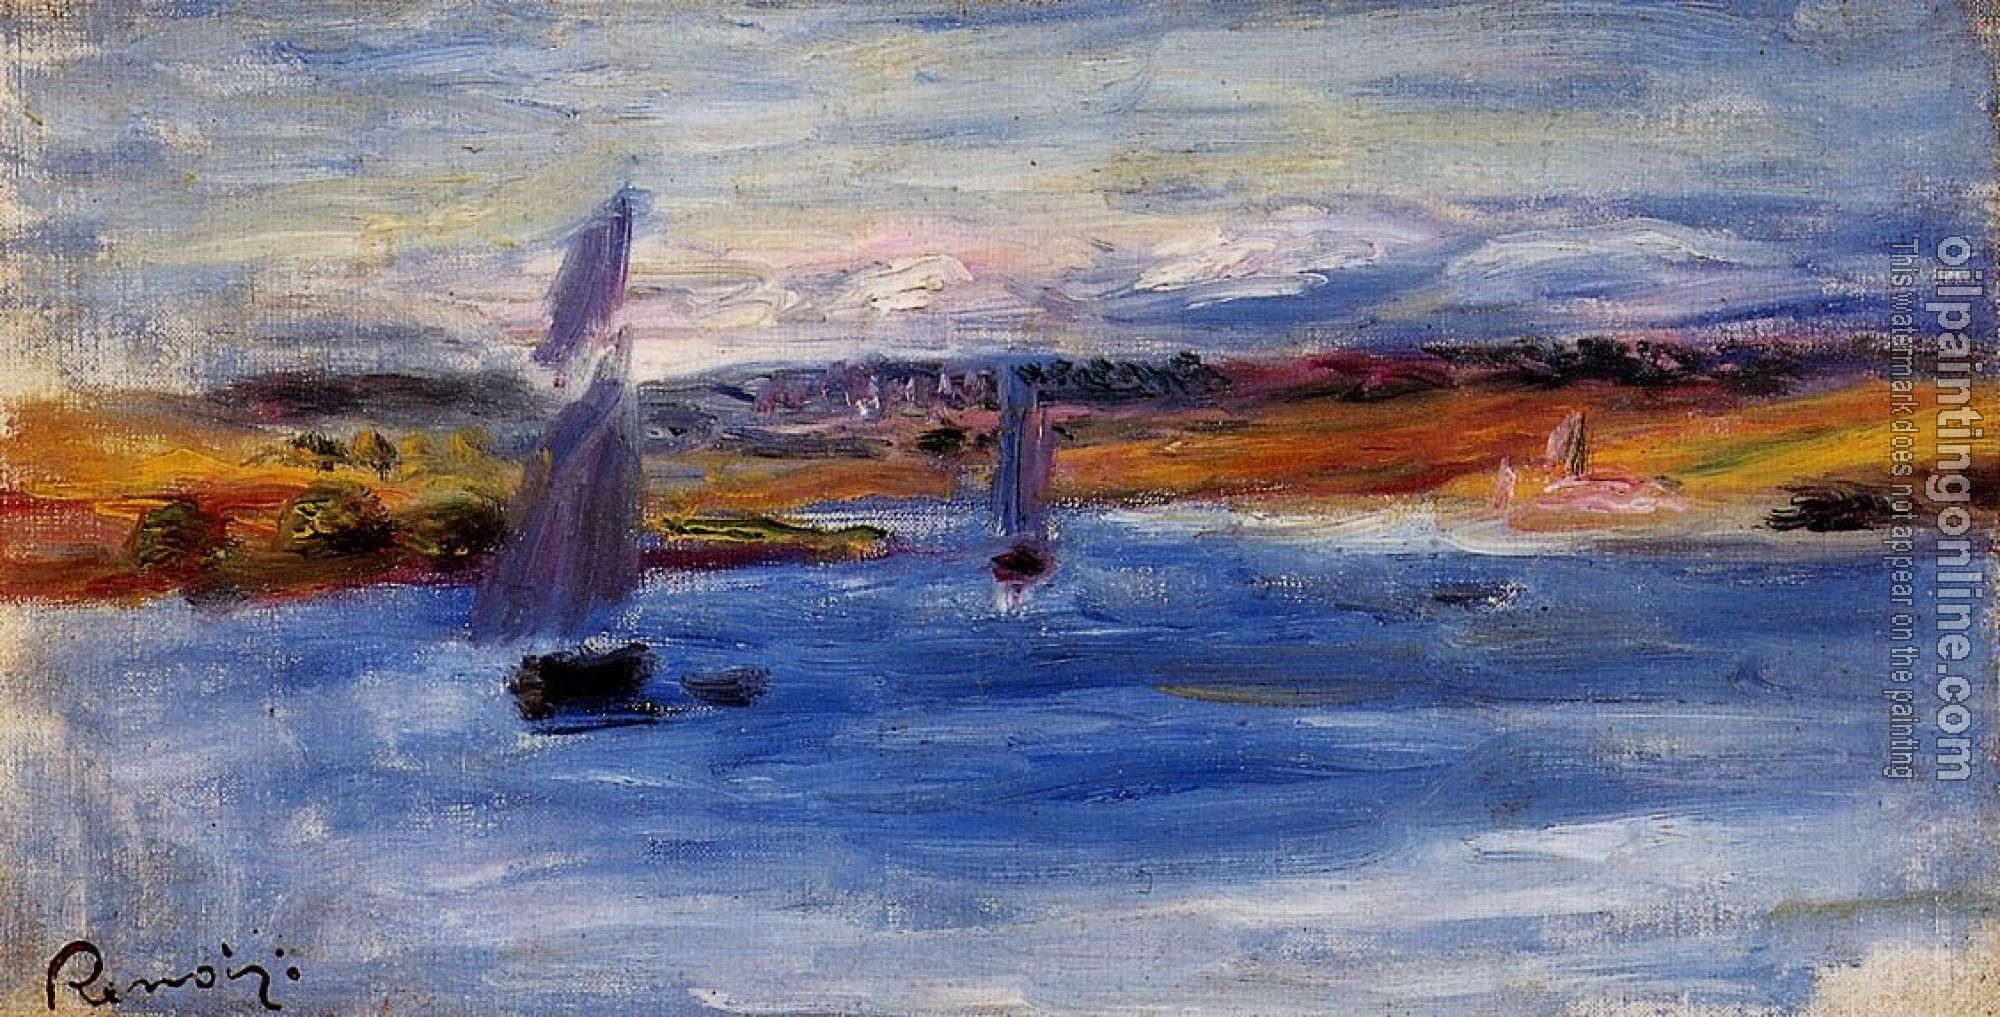 Renoir, Pierre Auguste - Sailboats